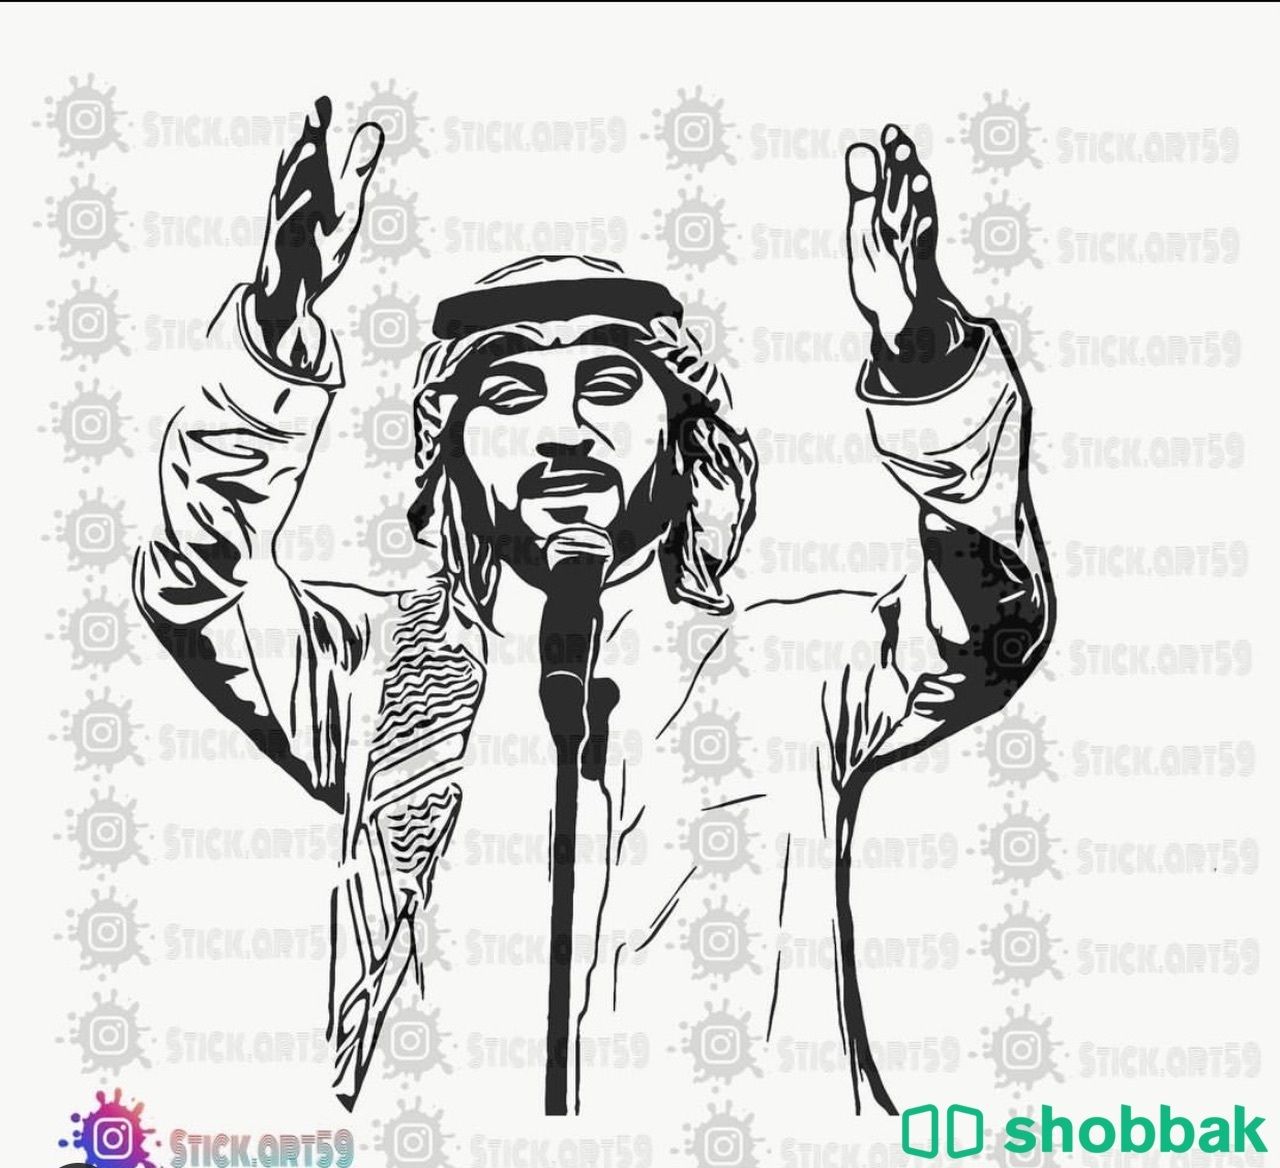 استكرات جدارية تصميم لاي شكل تحبه Shobbak Saudi Arabia